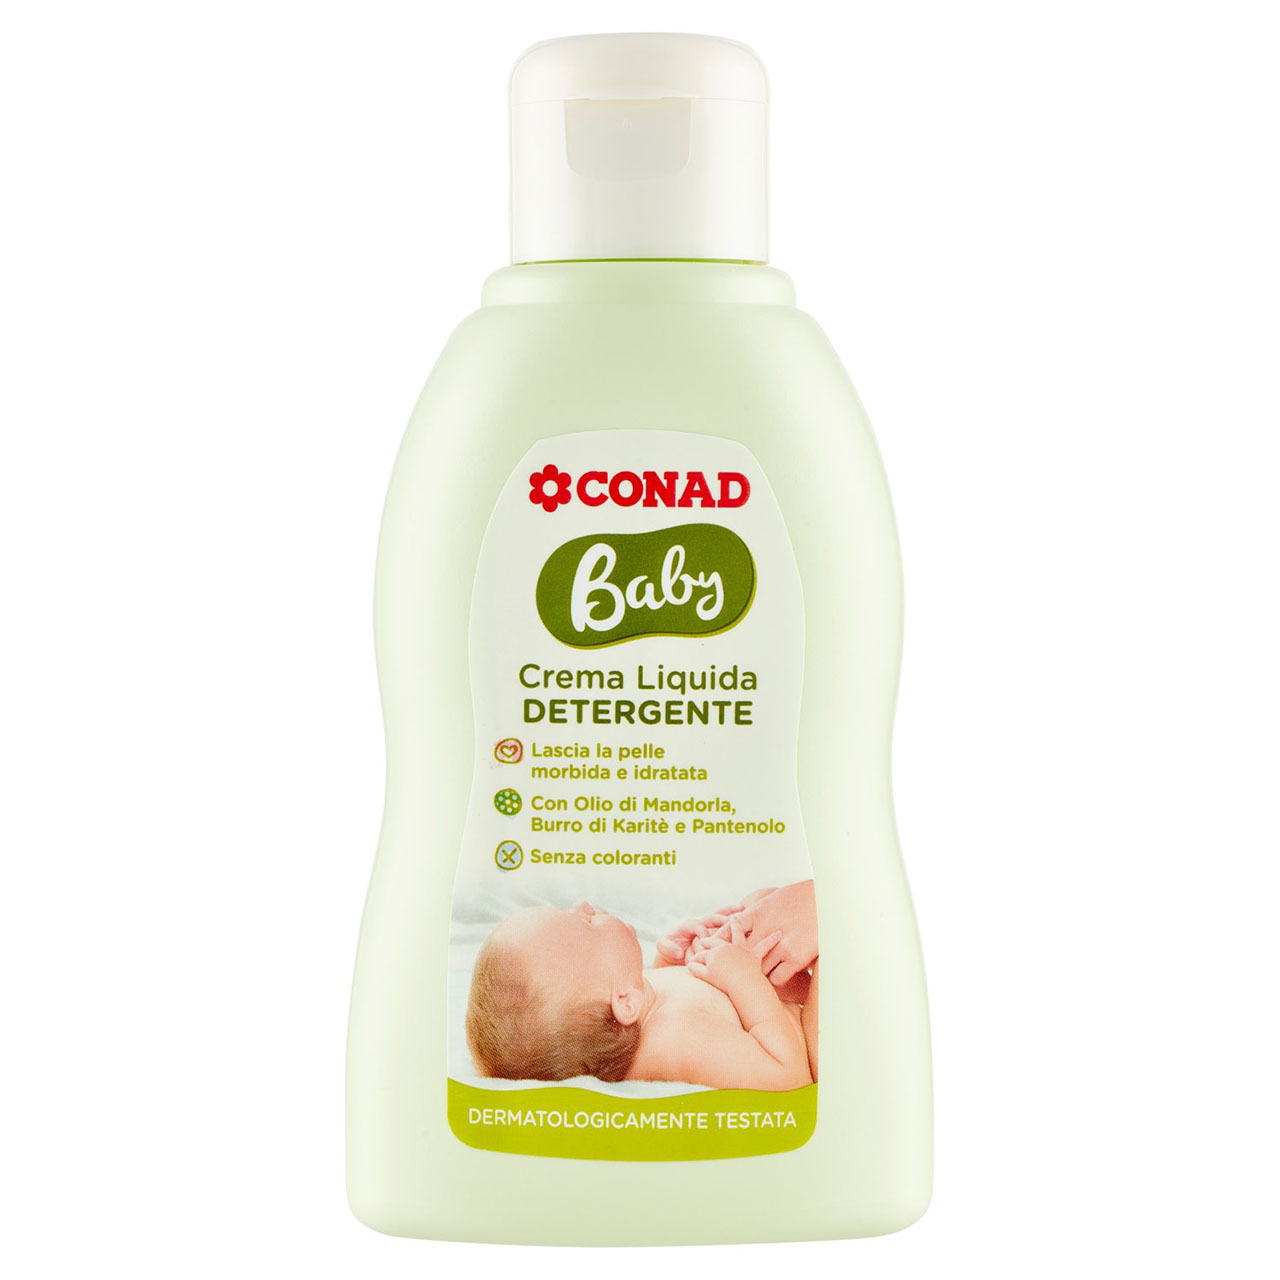 Adulti, non utilizzate gli shampoo “per neonati”